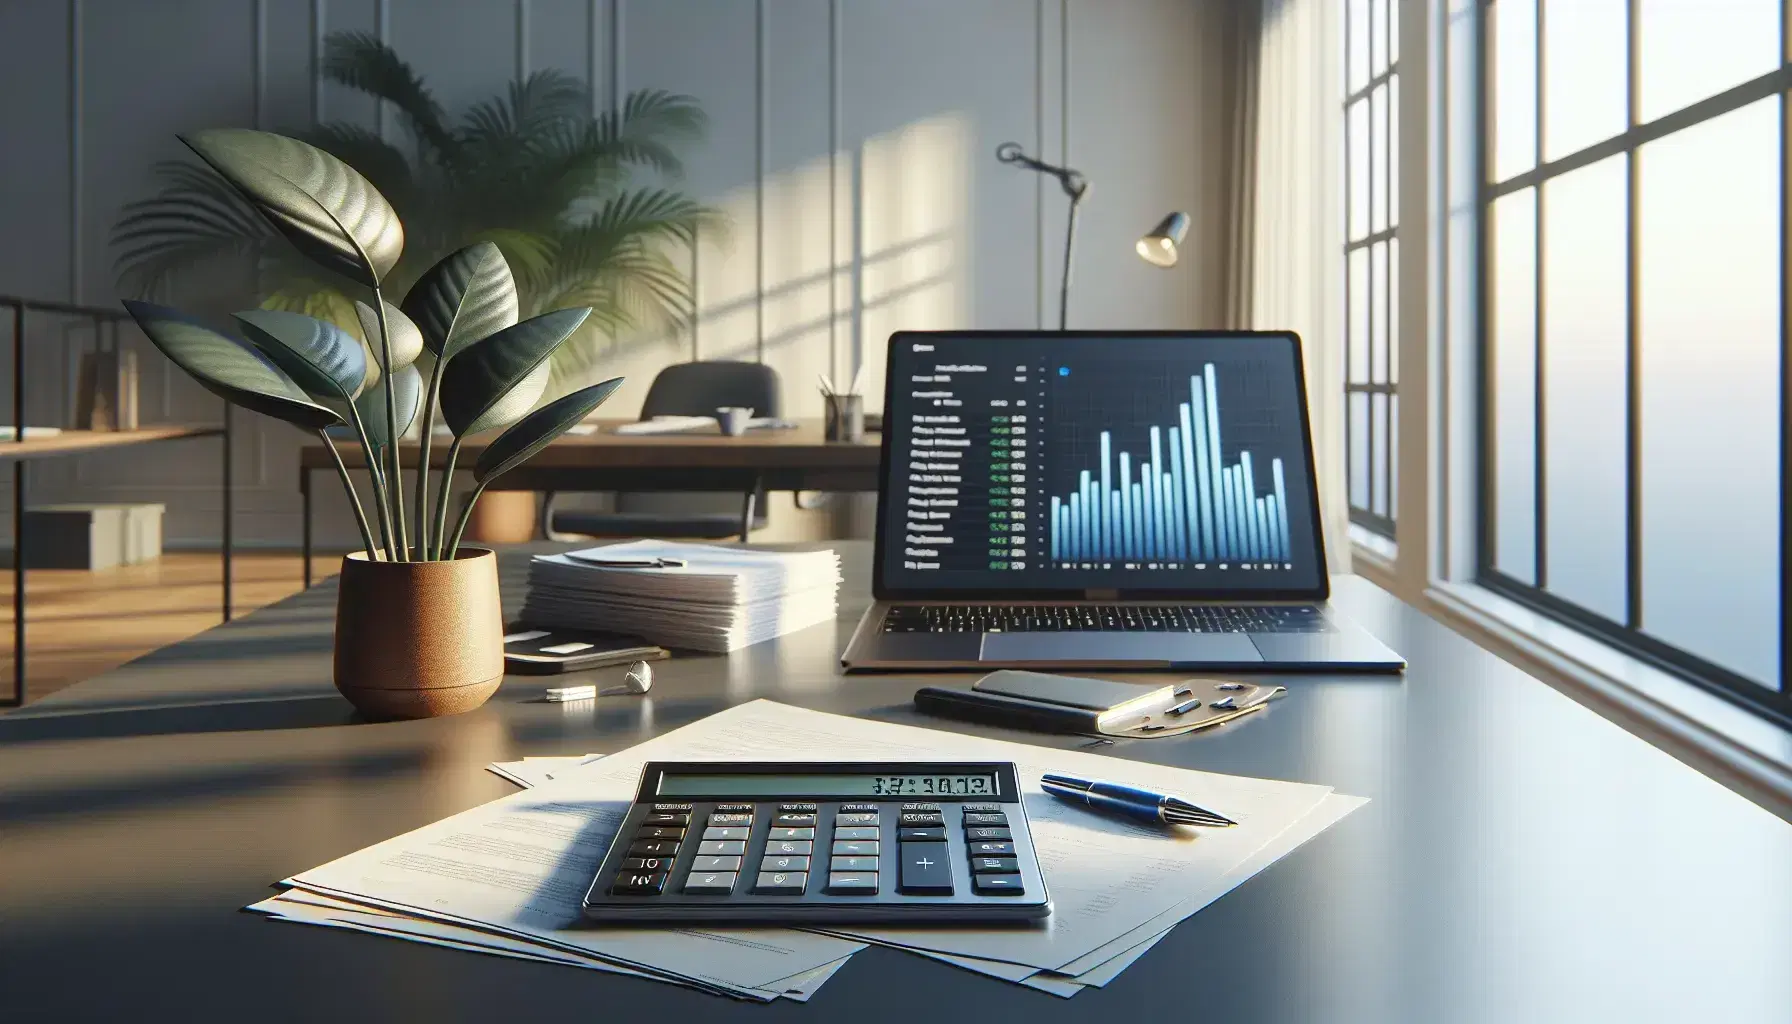 Escritorio de oficina con calculadora moderna, papeles ordenados, bolígrafo y laptop mostrando gráficos, junto a una planta y ventana con cielo azul.